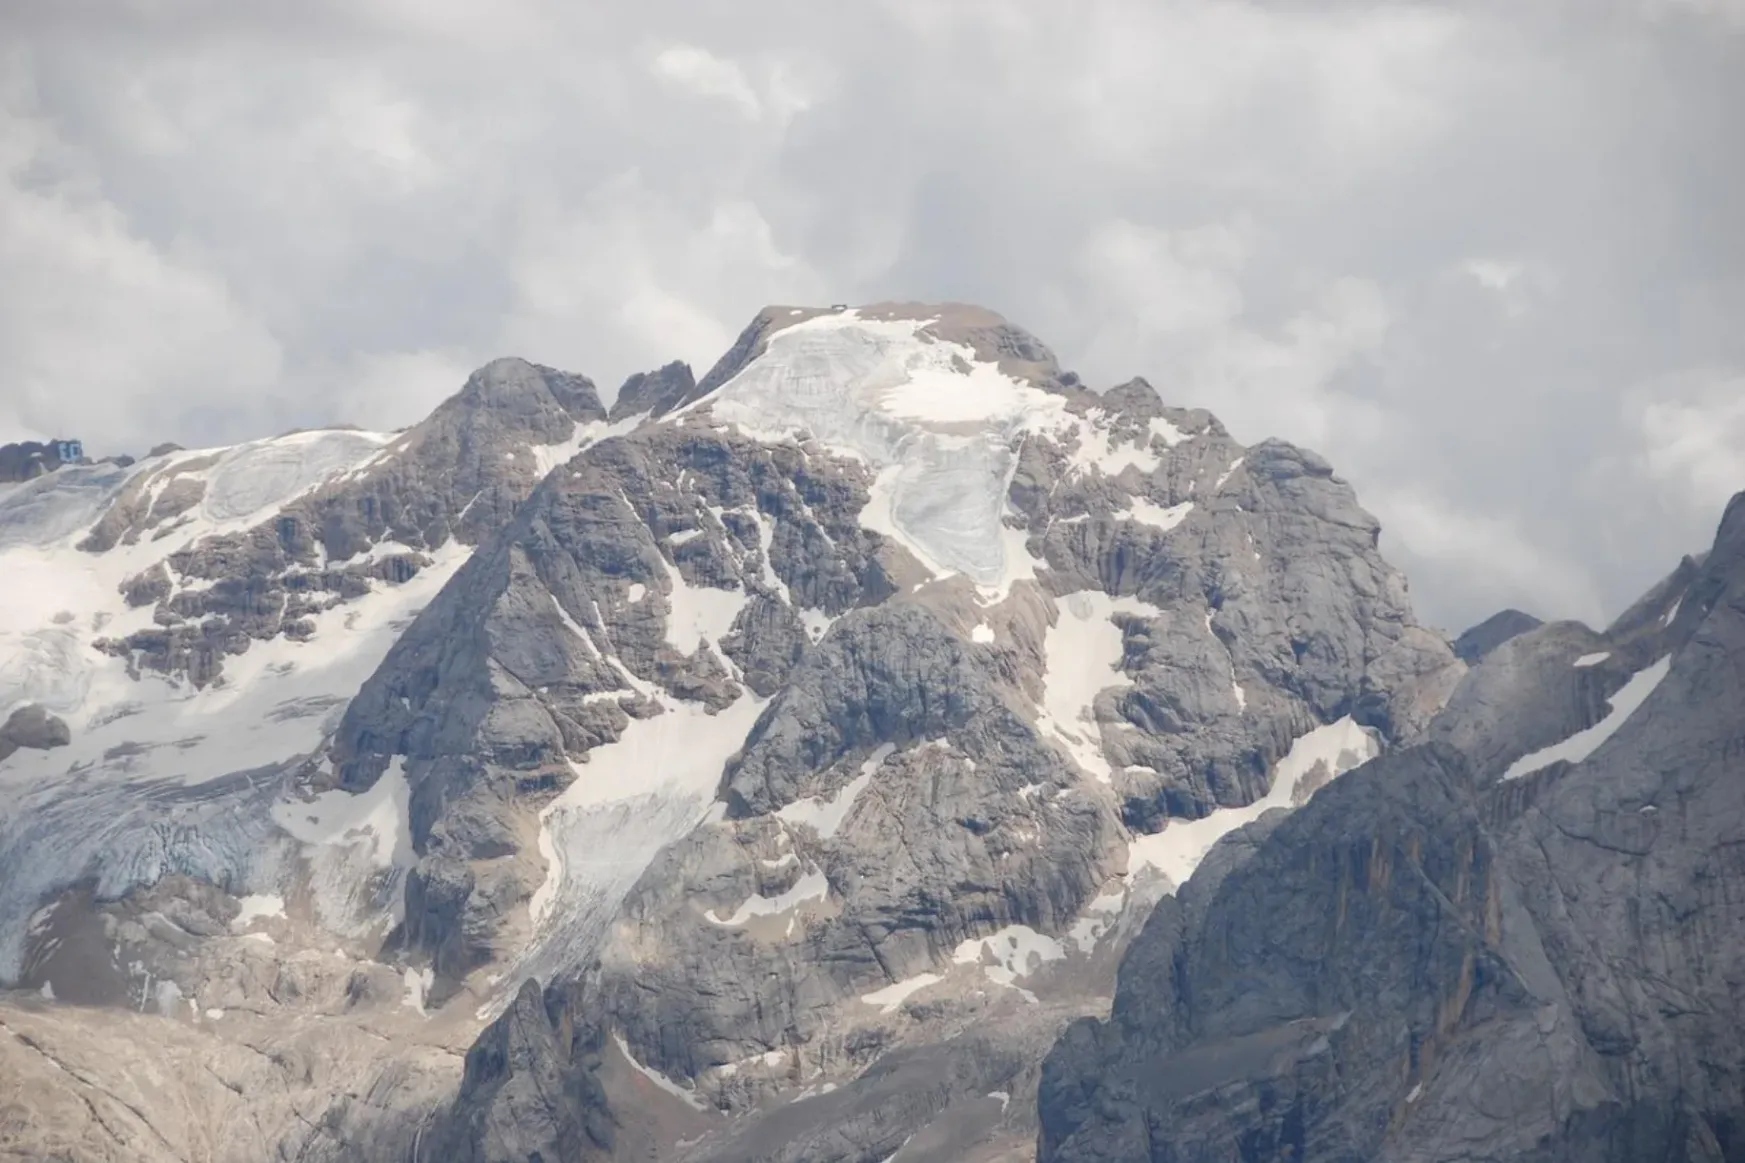 Frissítés: Legalább hatan meghaltak az észak-olaszországi jégcsuszamlás következtében; a 3 eltűntnek hitt román hegymászót megtalálták